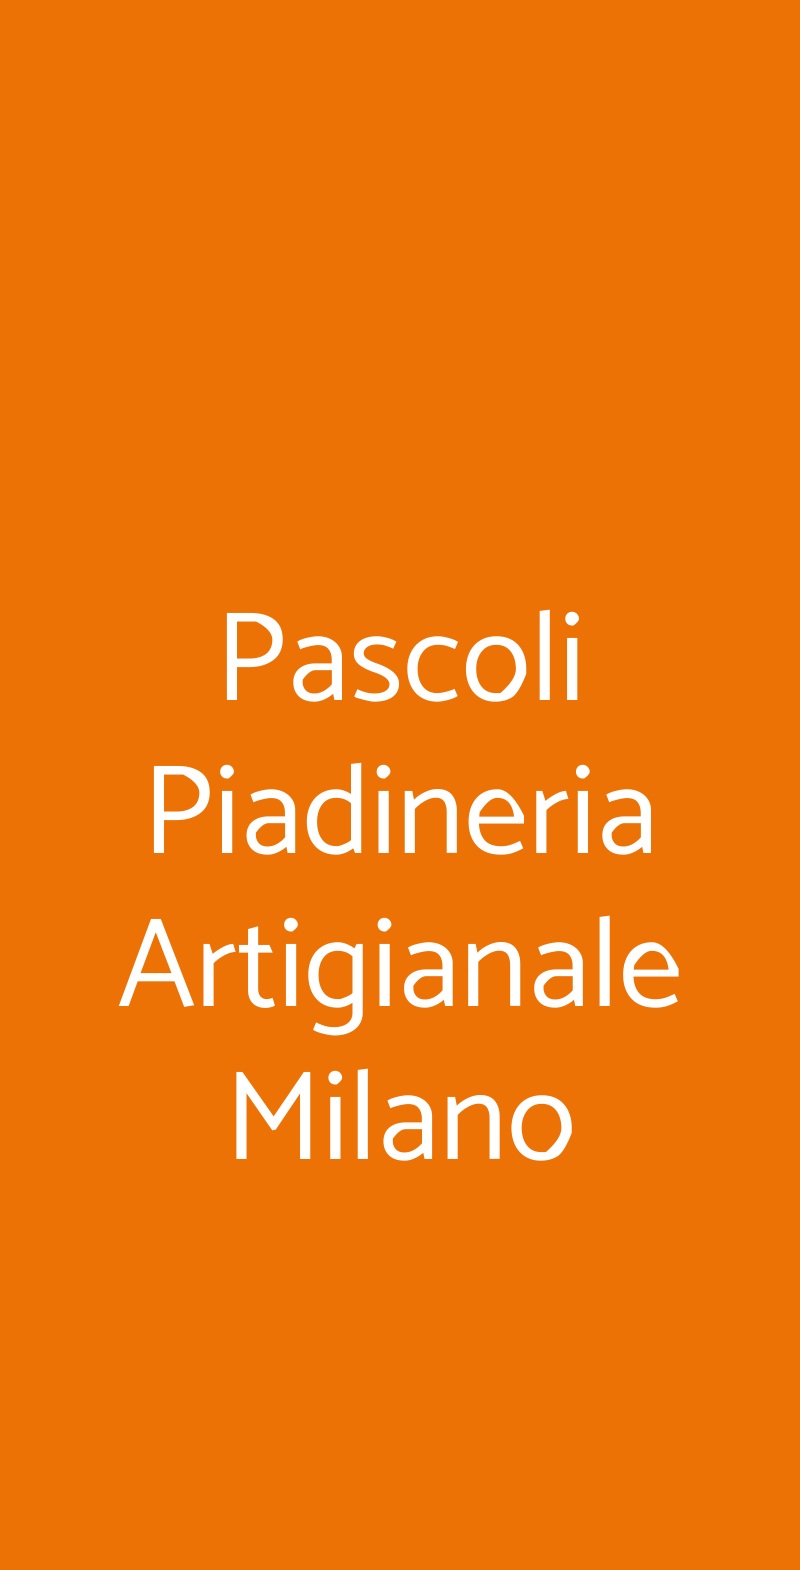 Pascoli Piadineria Artigianale Milano Milano menù 1 pagina